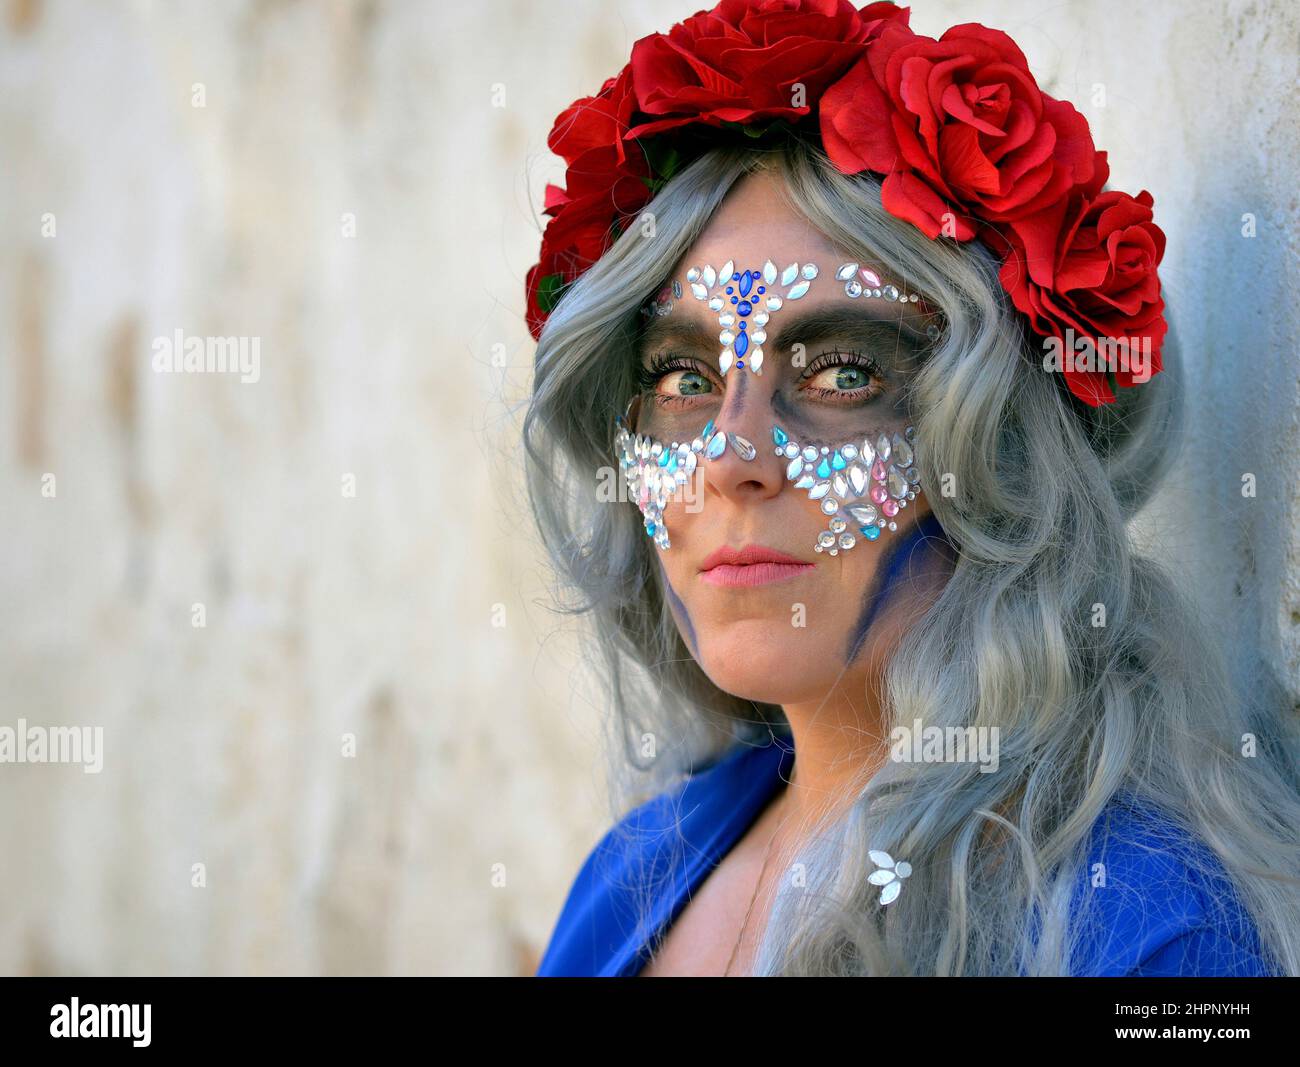 Junge, schöne kaukasische Frau mit roten Blumen in ihren grauen Haaren und vielen Gesichtssteinen am mexikanischen Tag der Toten (Día de los Muertos) sieht den Betrachter an. Stockfoto